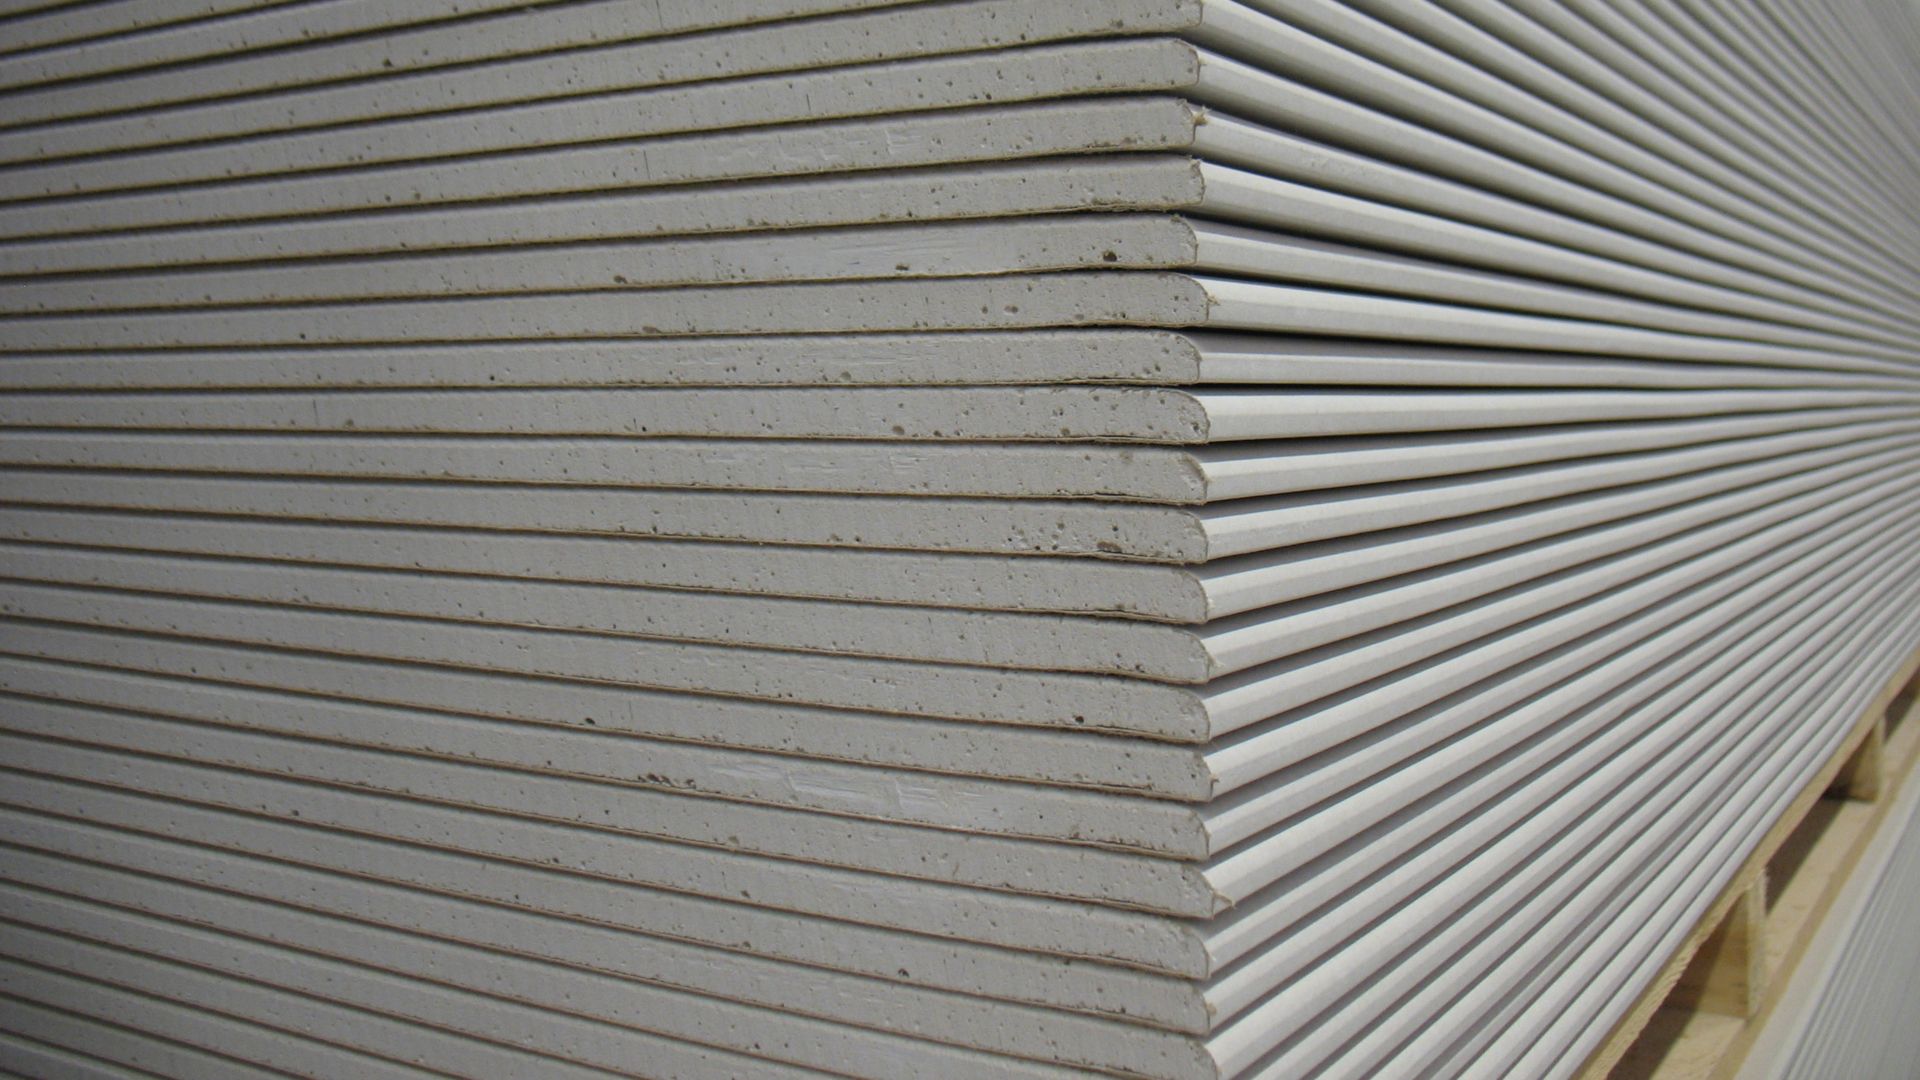 石膏建筑元素用Sika添加剂生产